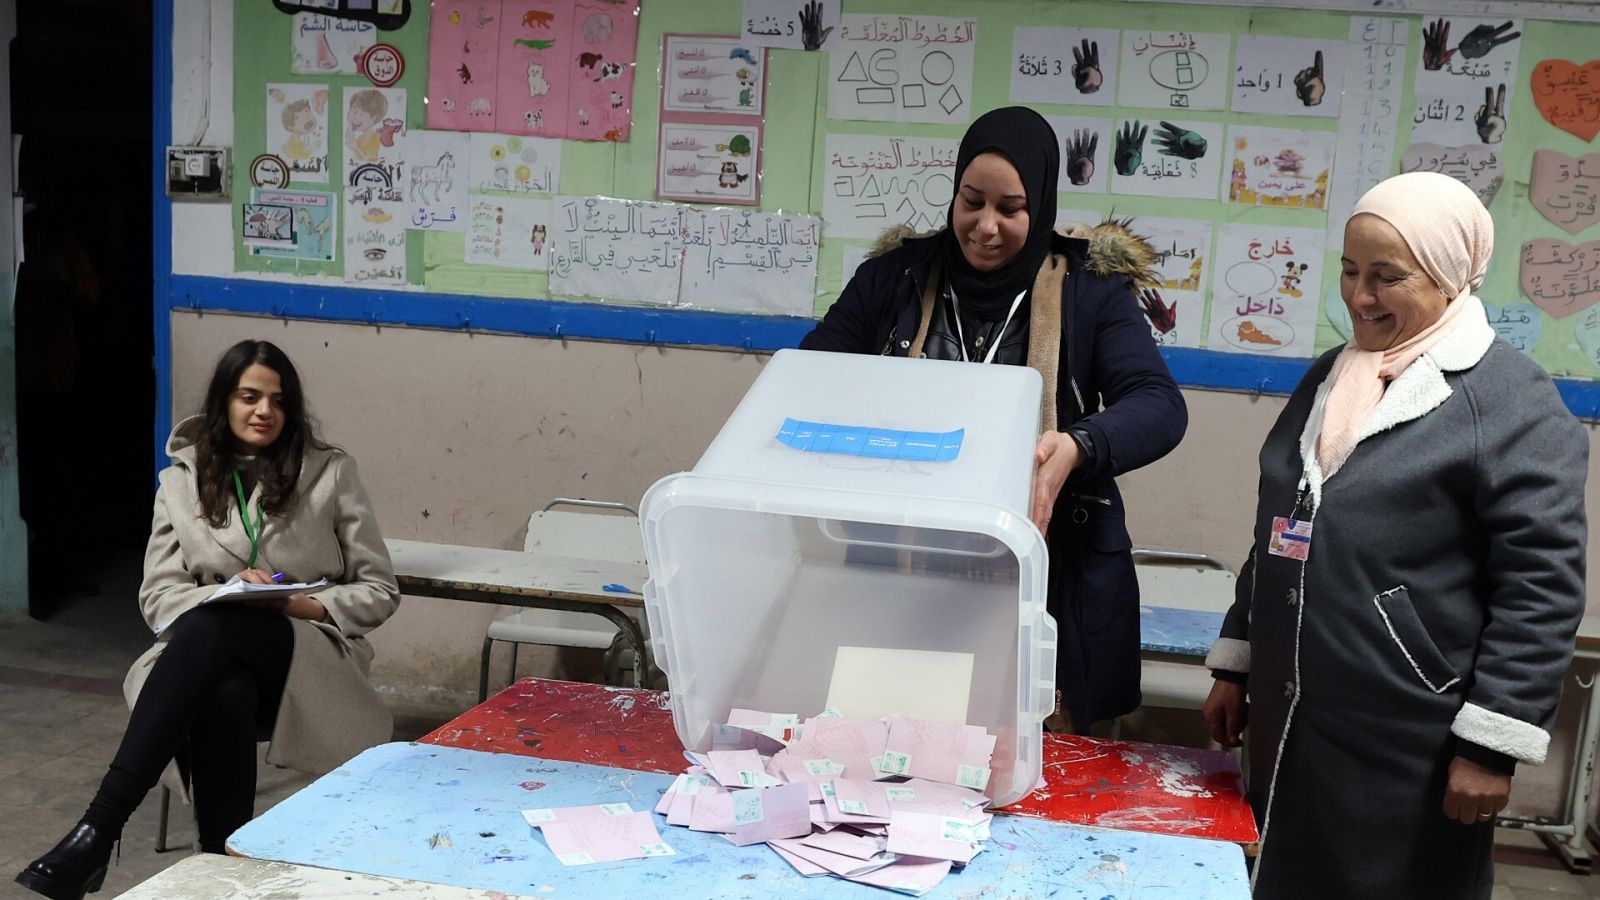 Recuento de votos en un colegio electoral en Túnez